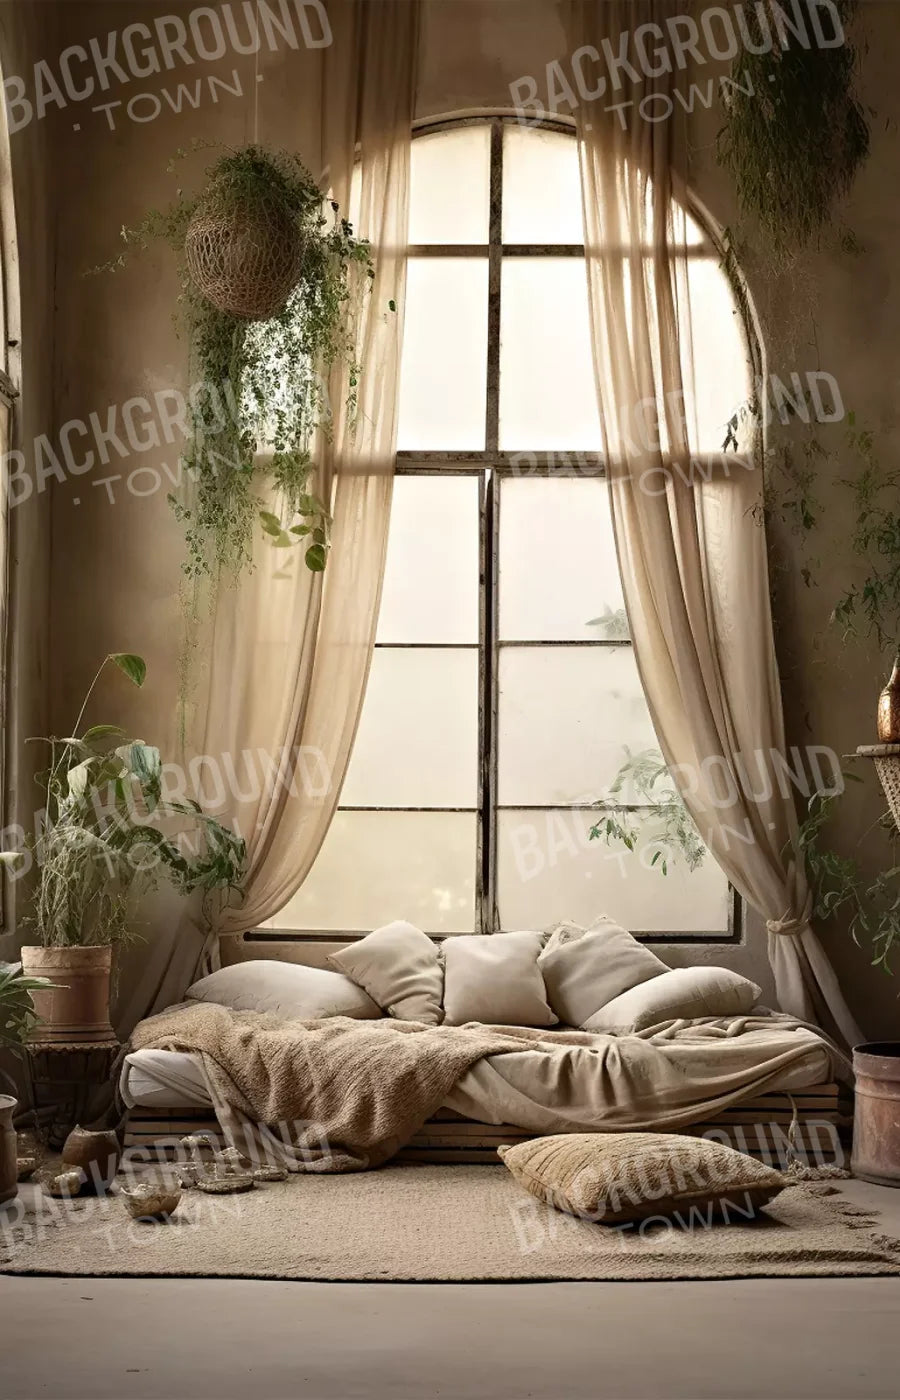 Boho Room I 9’X14’ Ultracloth (108 X 168 Inch) Backdrop